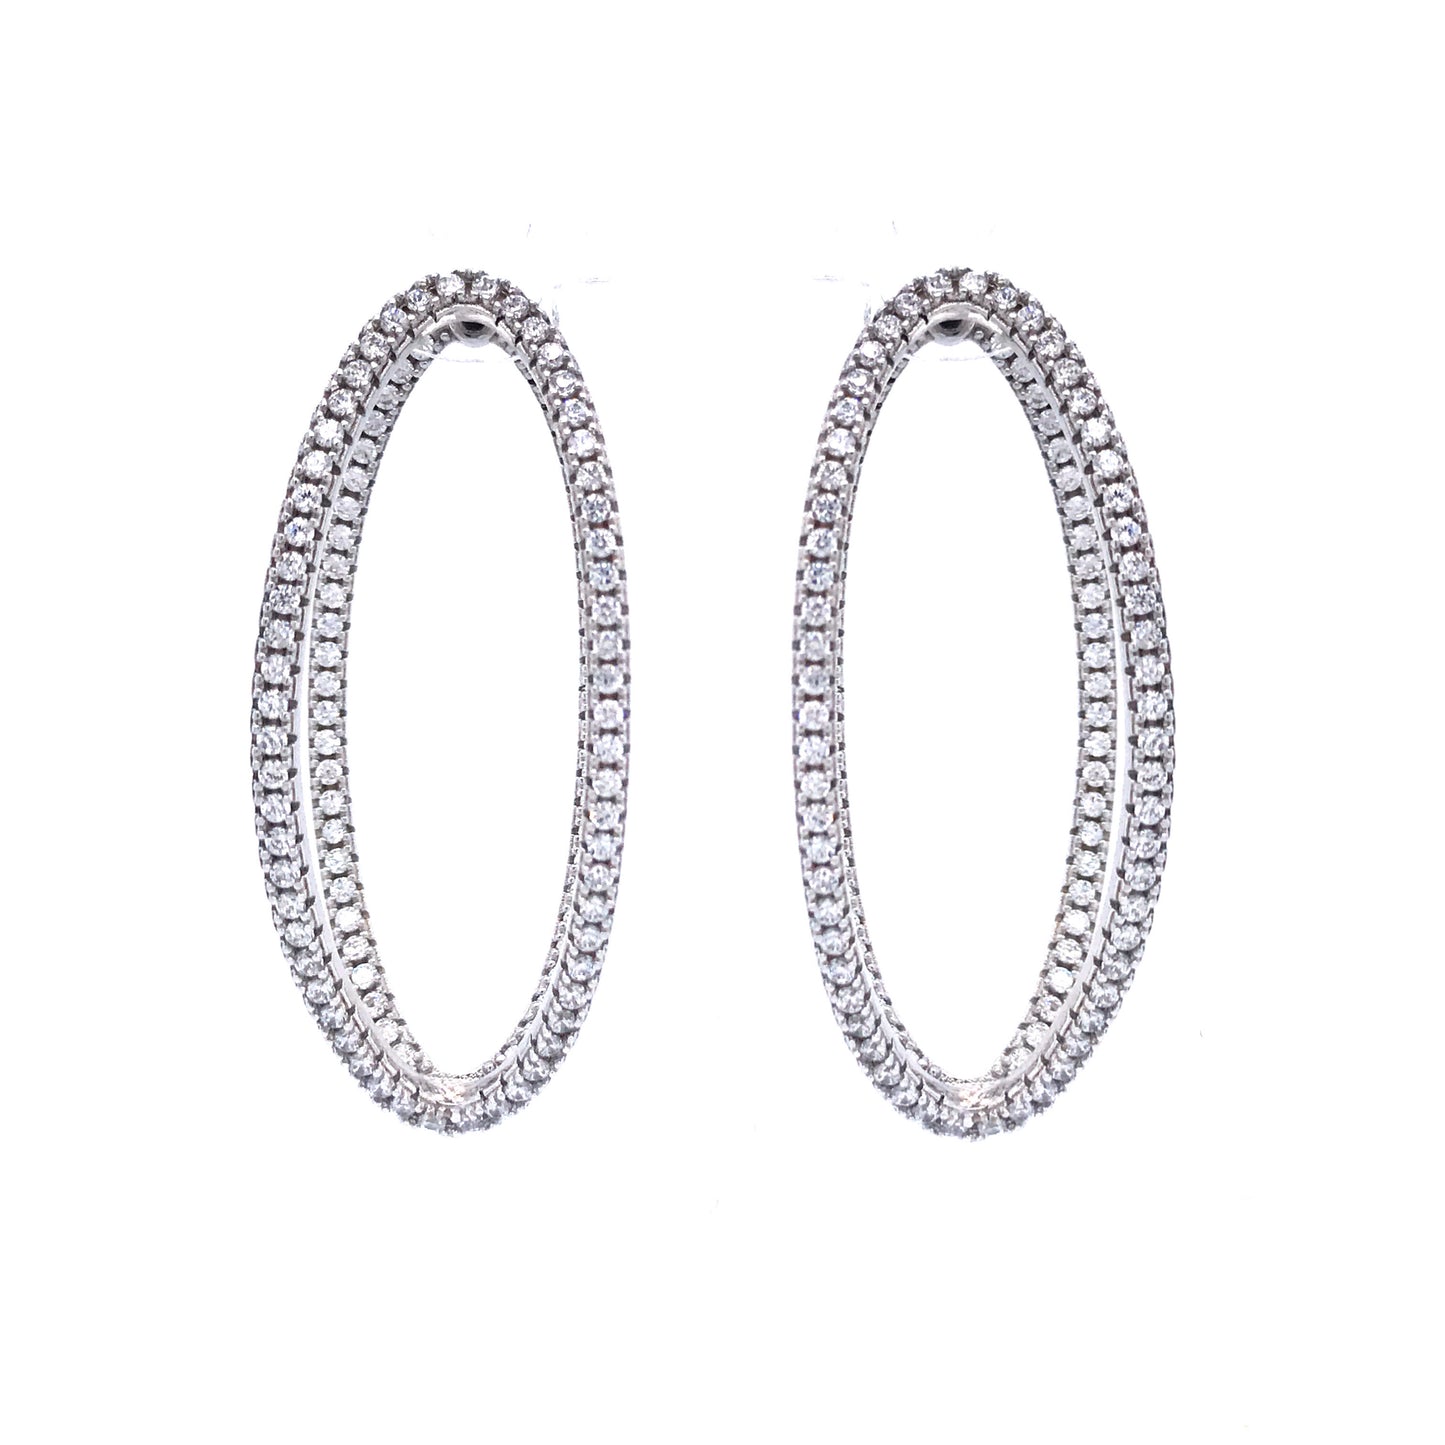 Sterling Silver Double Oval Earrings - HK Jewels